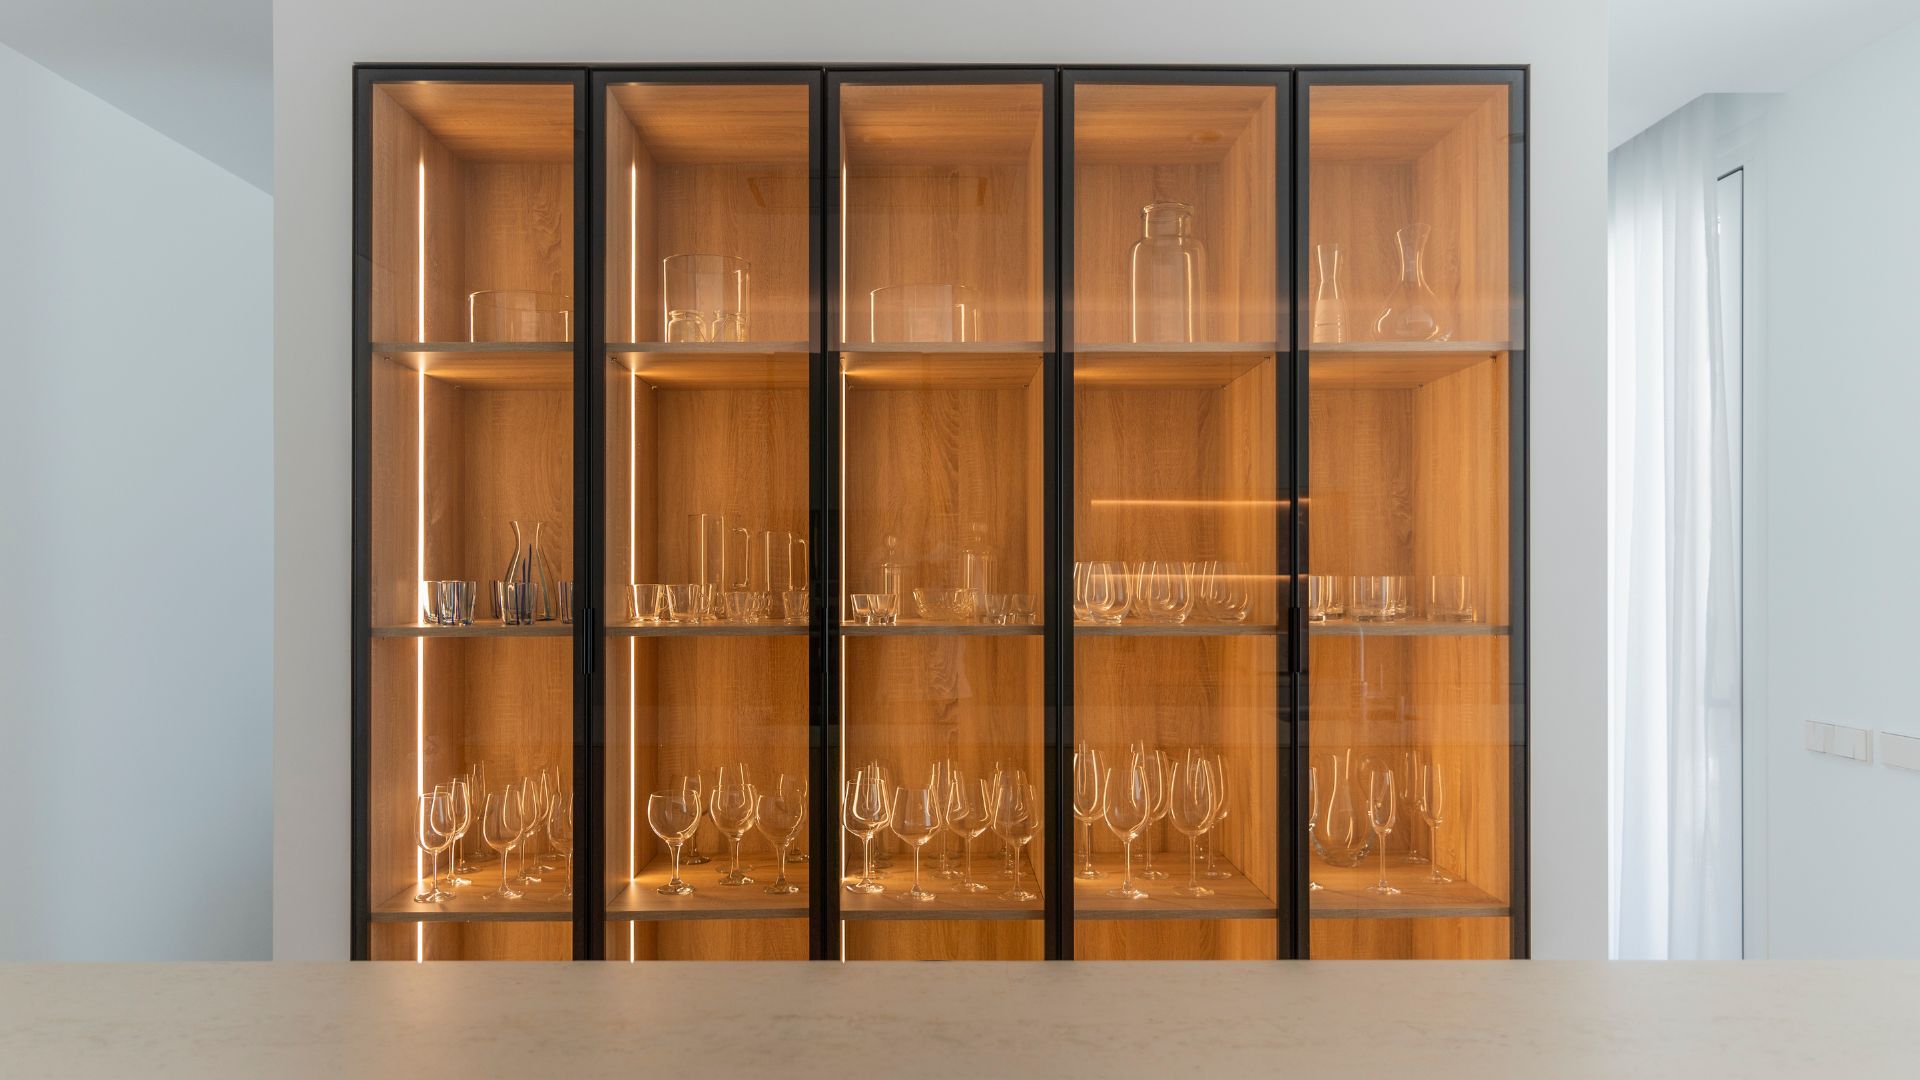 Vitrina con vinoteca en muro divisor interior casa modular